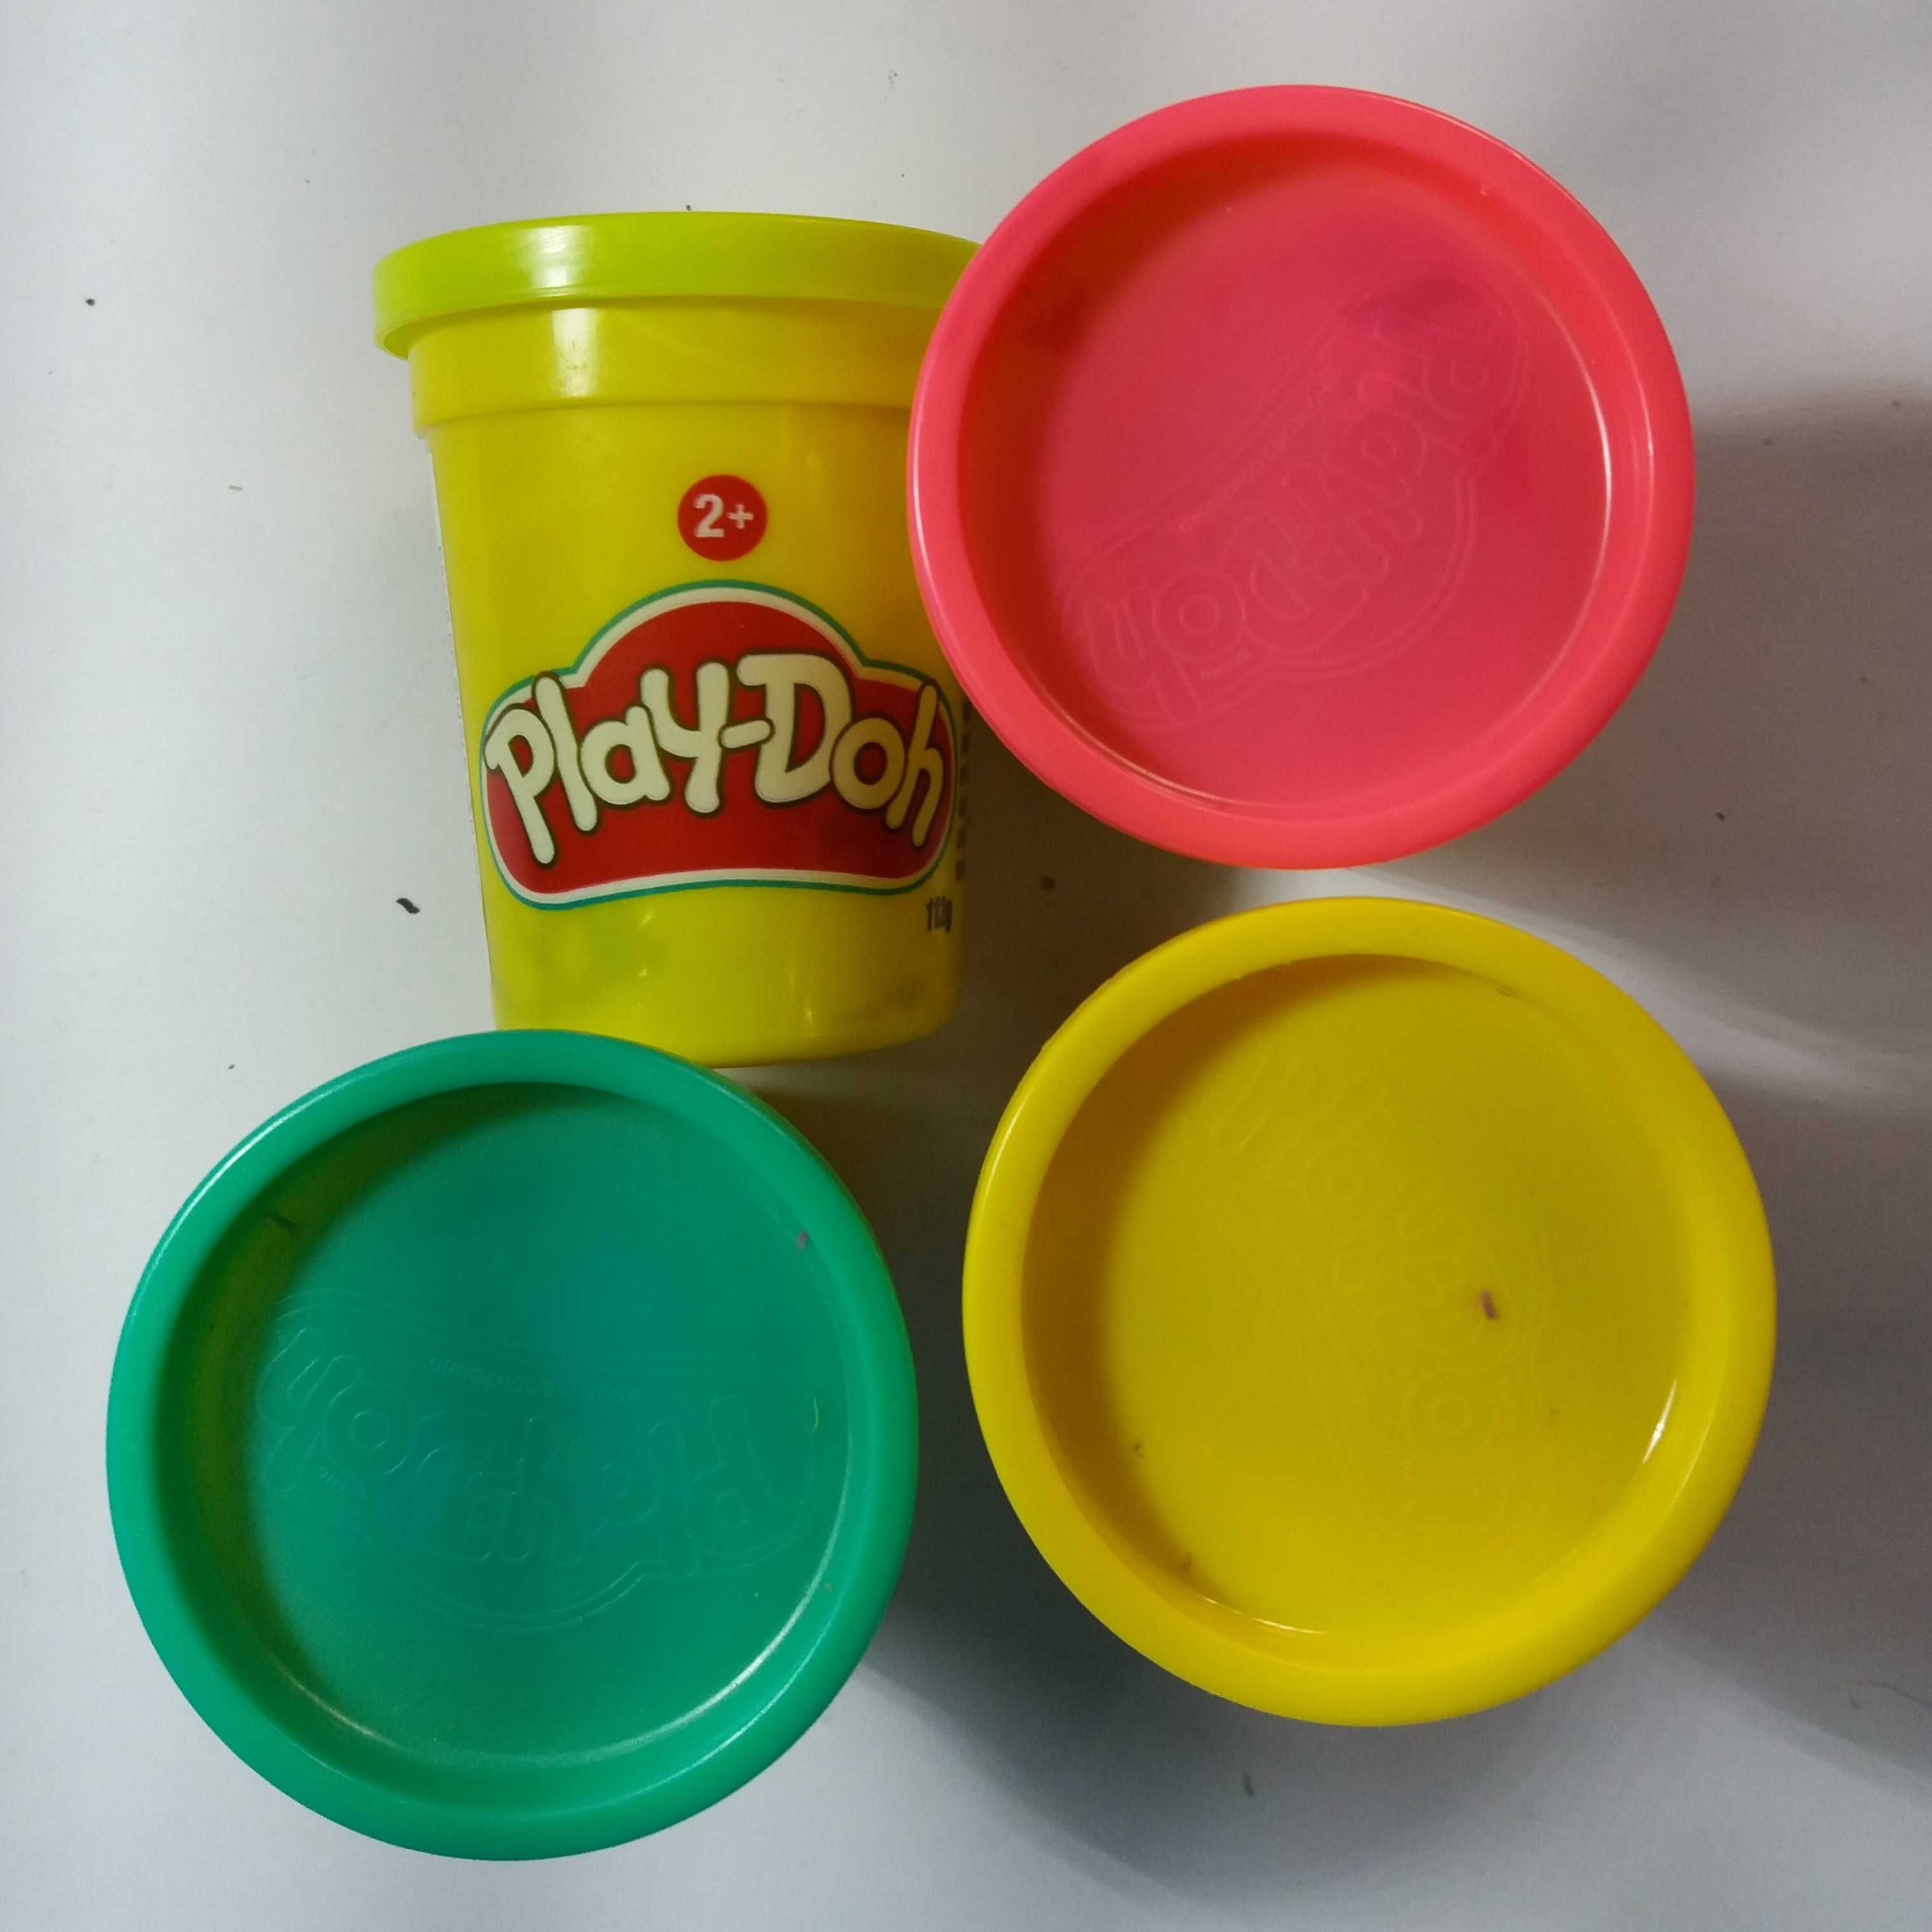 Plasticinas Play dog com moldes e vários baldes de plasticina 12€